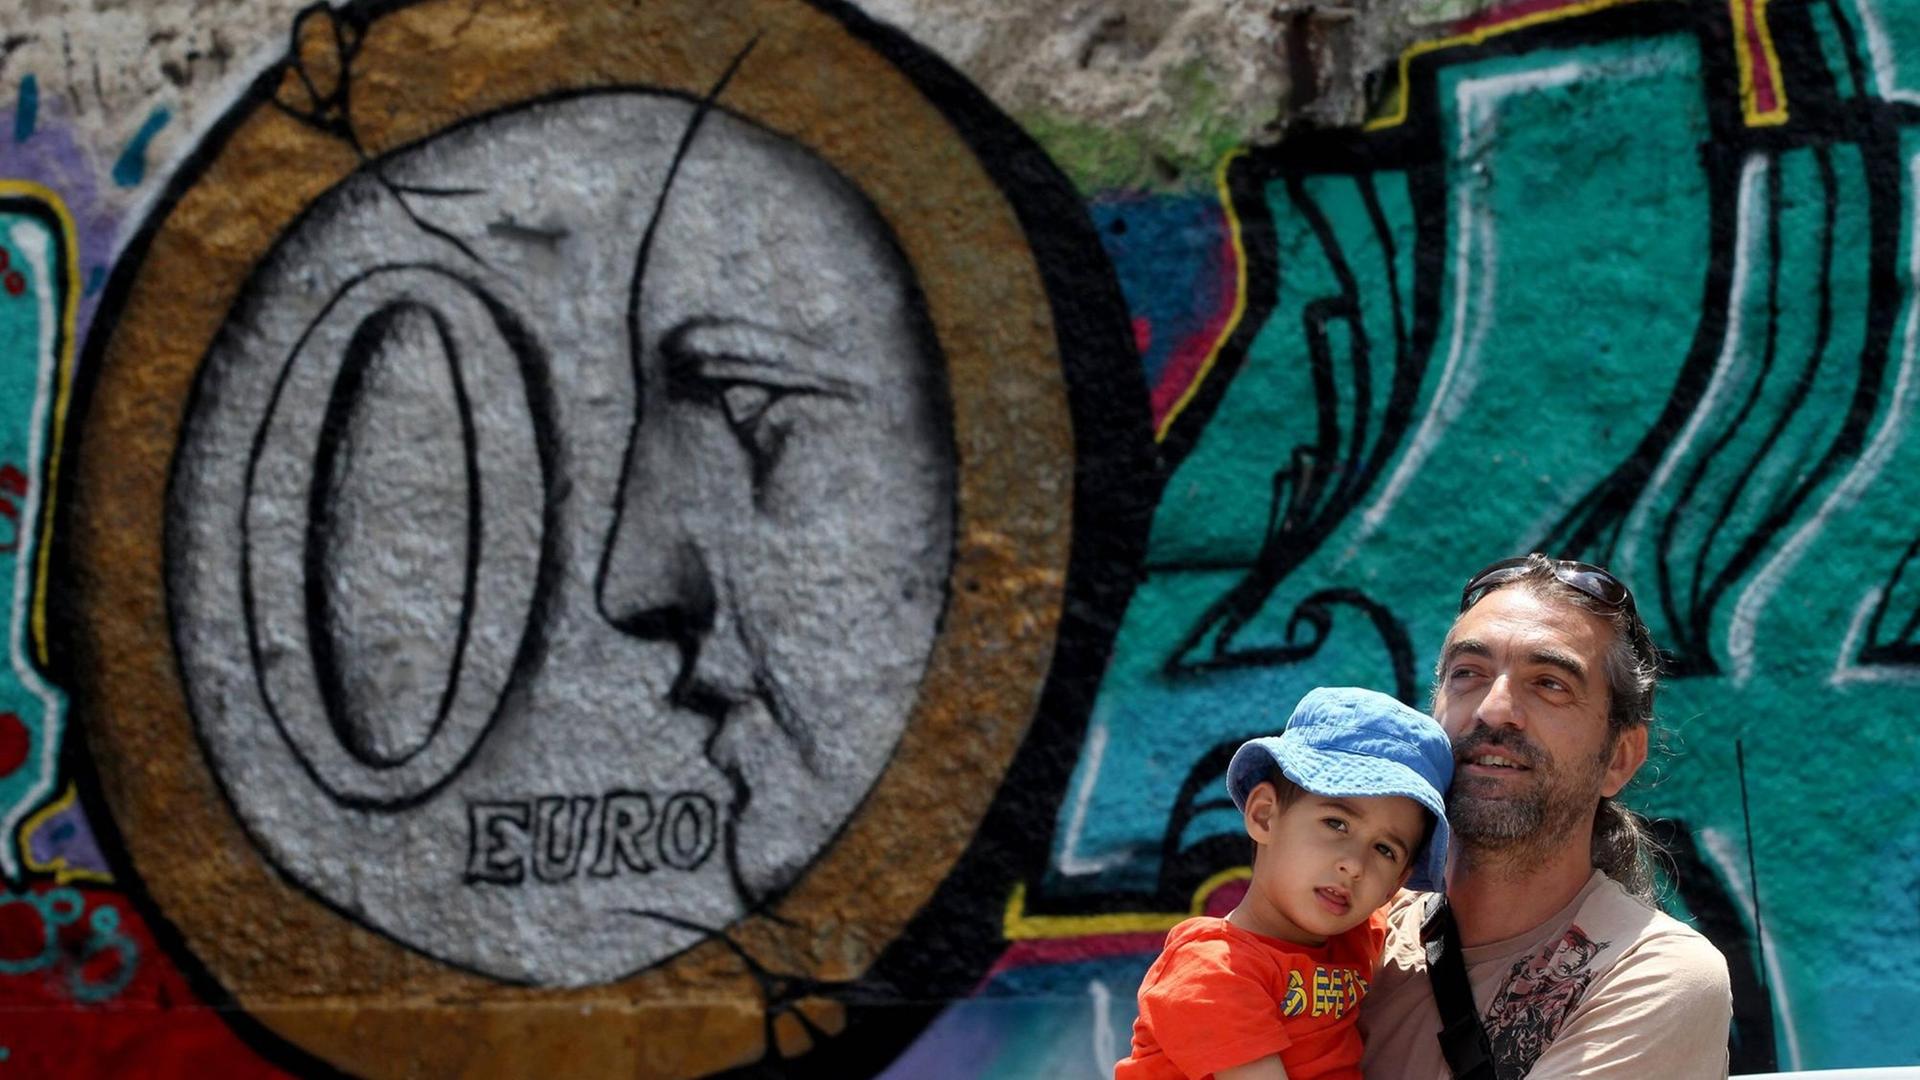 Ein Mann steht mit seinem Kind auf dem Arm vor einem Graffiti in Athen, das eine Euro-Münze zeigt.